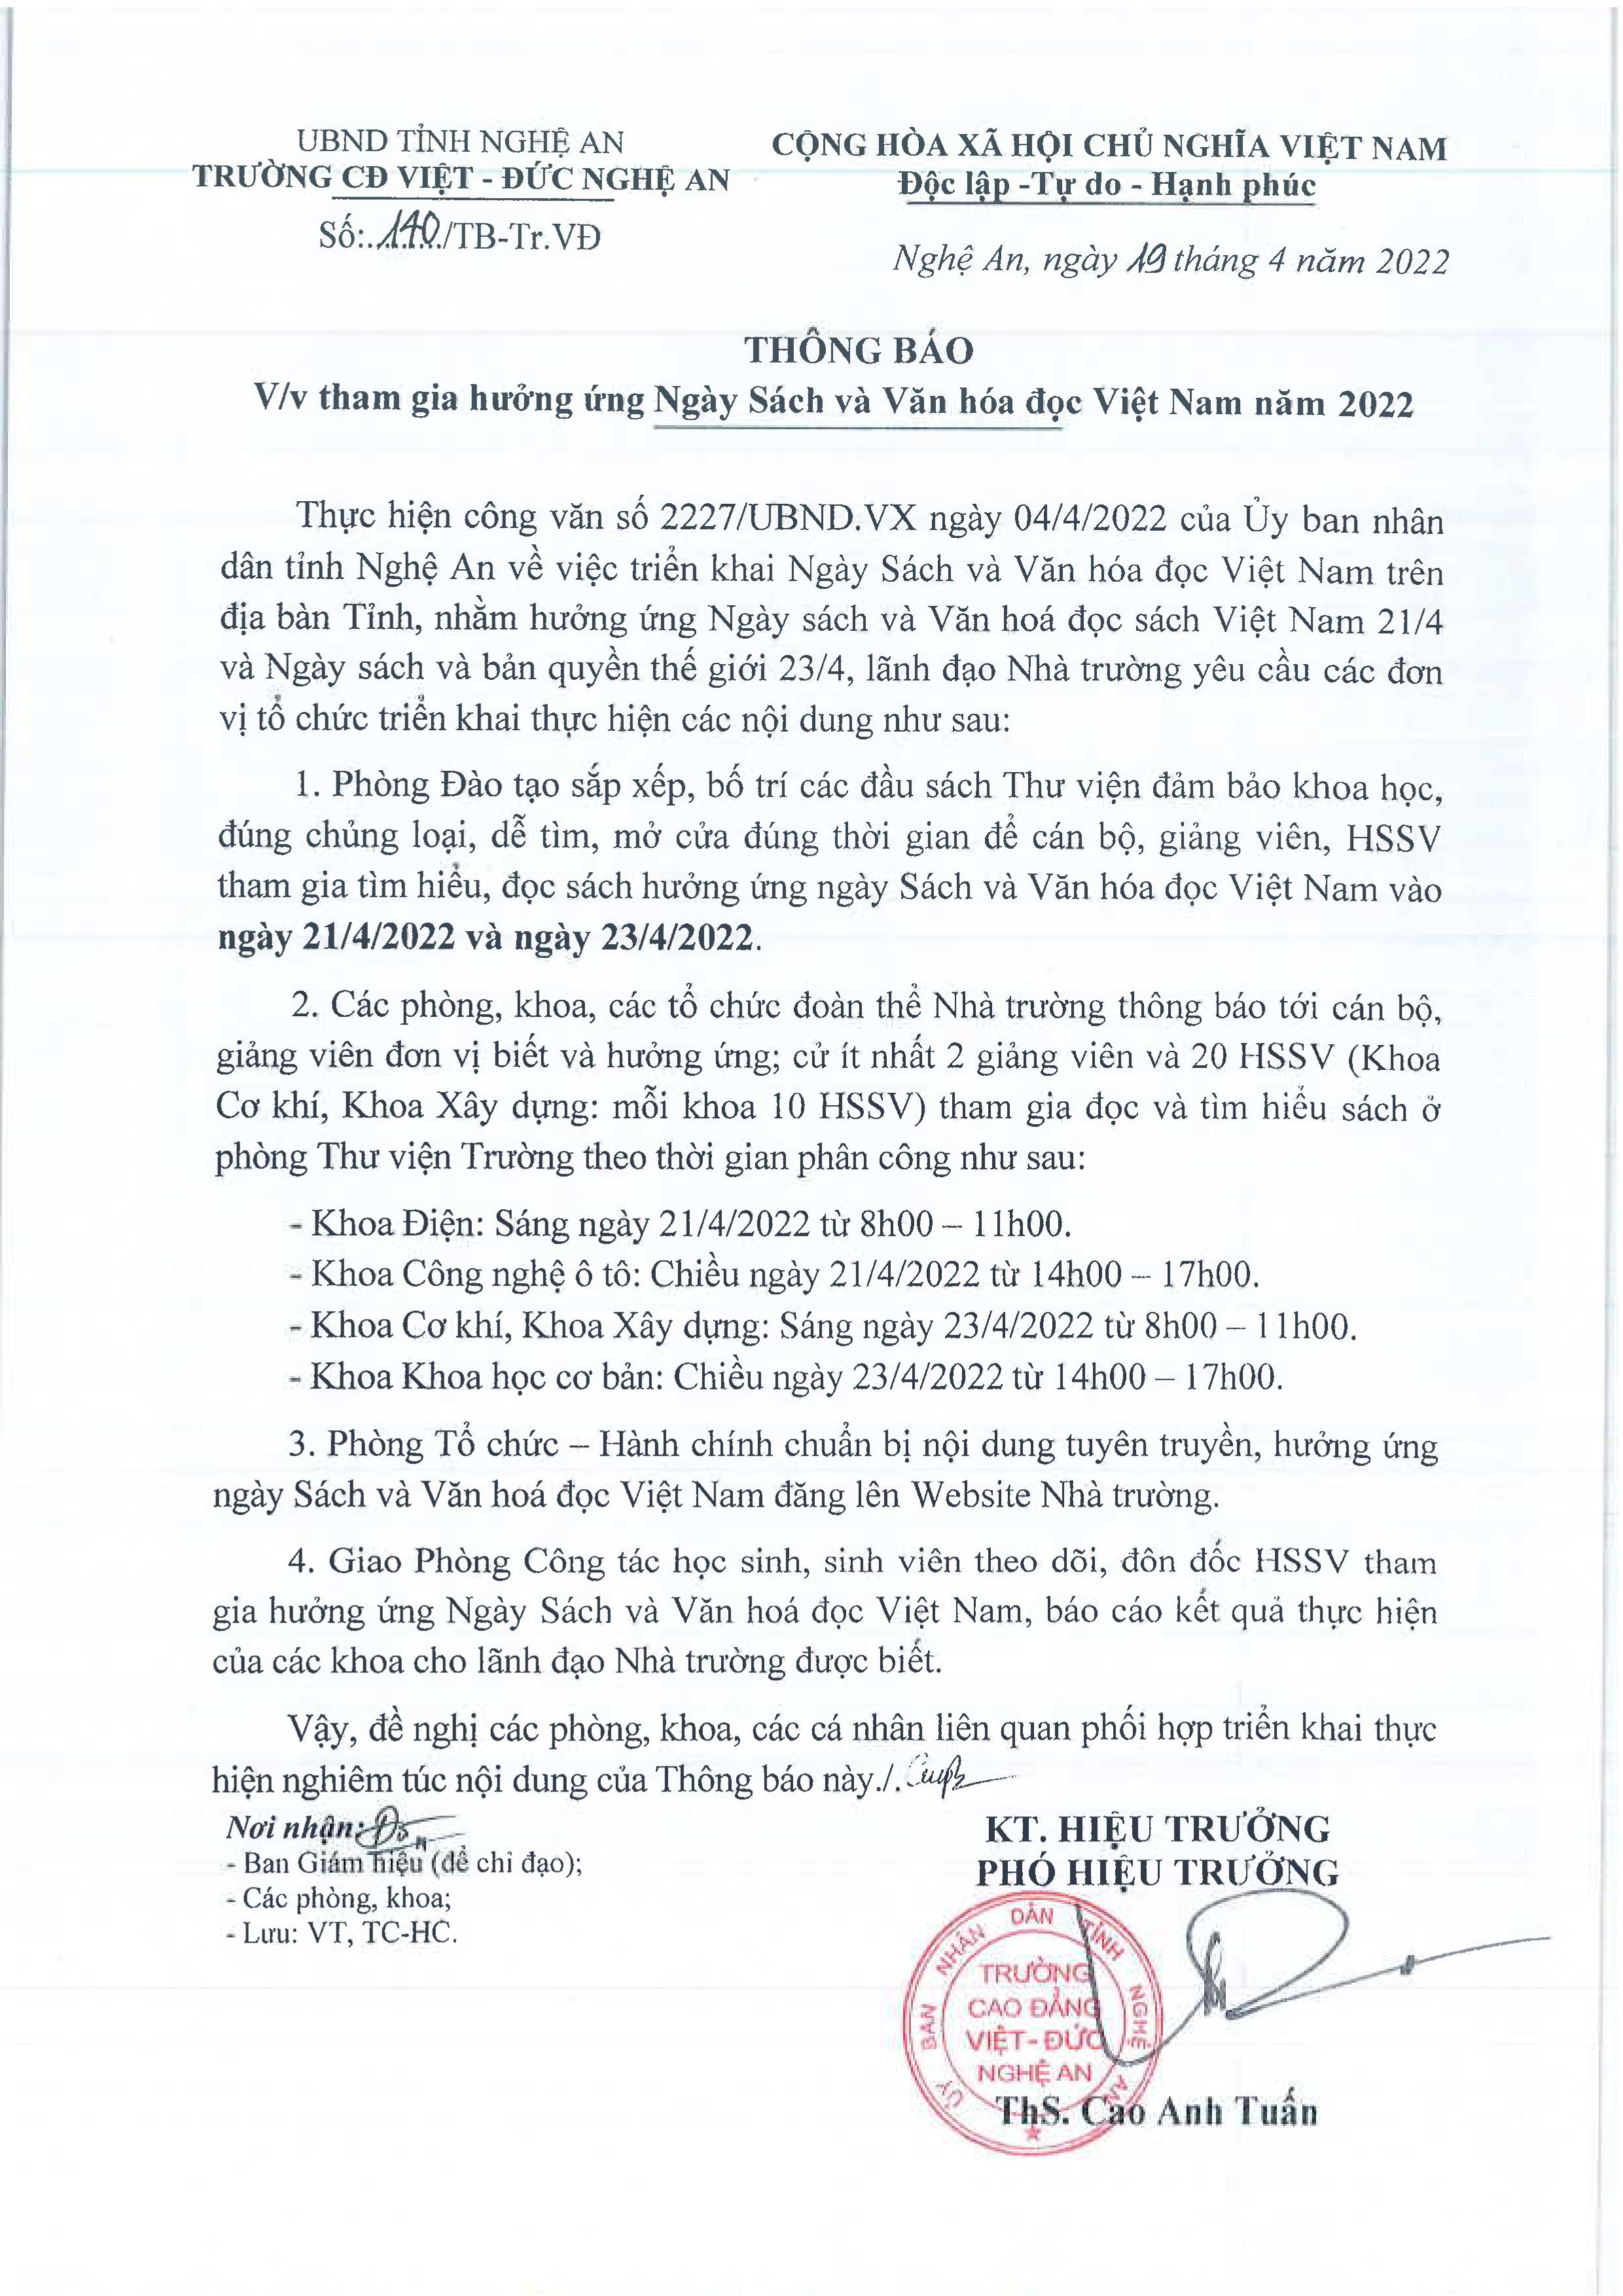  Thông báo số 140/TB-Tr.VĐ ngày 19/4/2022 của Trường Cao đẳng Việt - Đức Nghệ An về việc tham gia hưởng ứng Ngày sách và Văn hóa đọc Việt Nam năm 2022